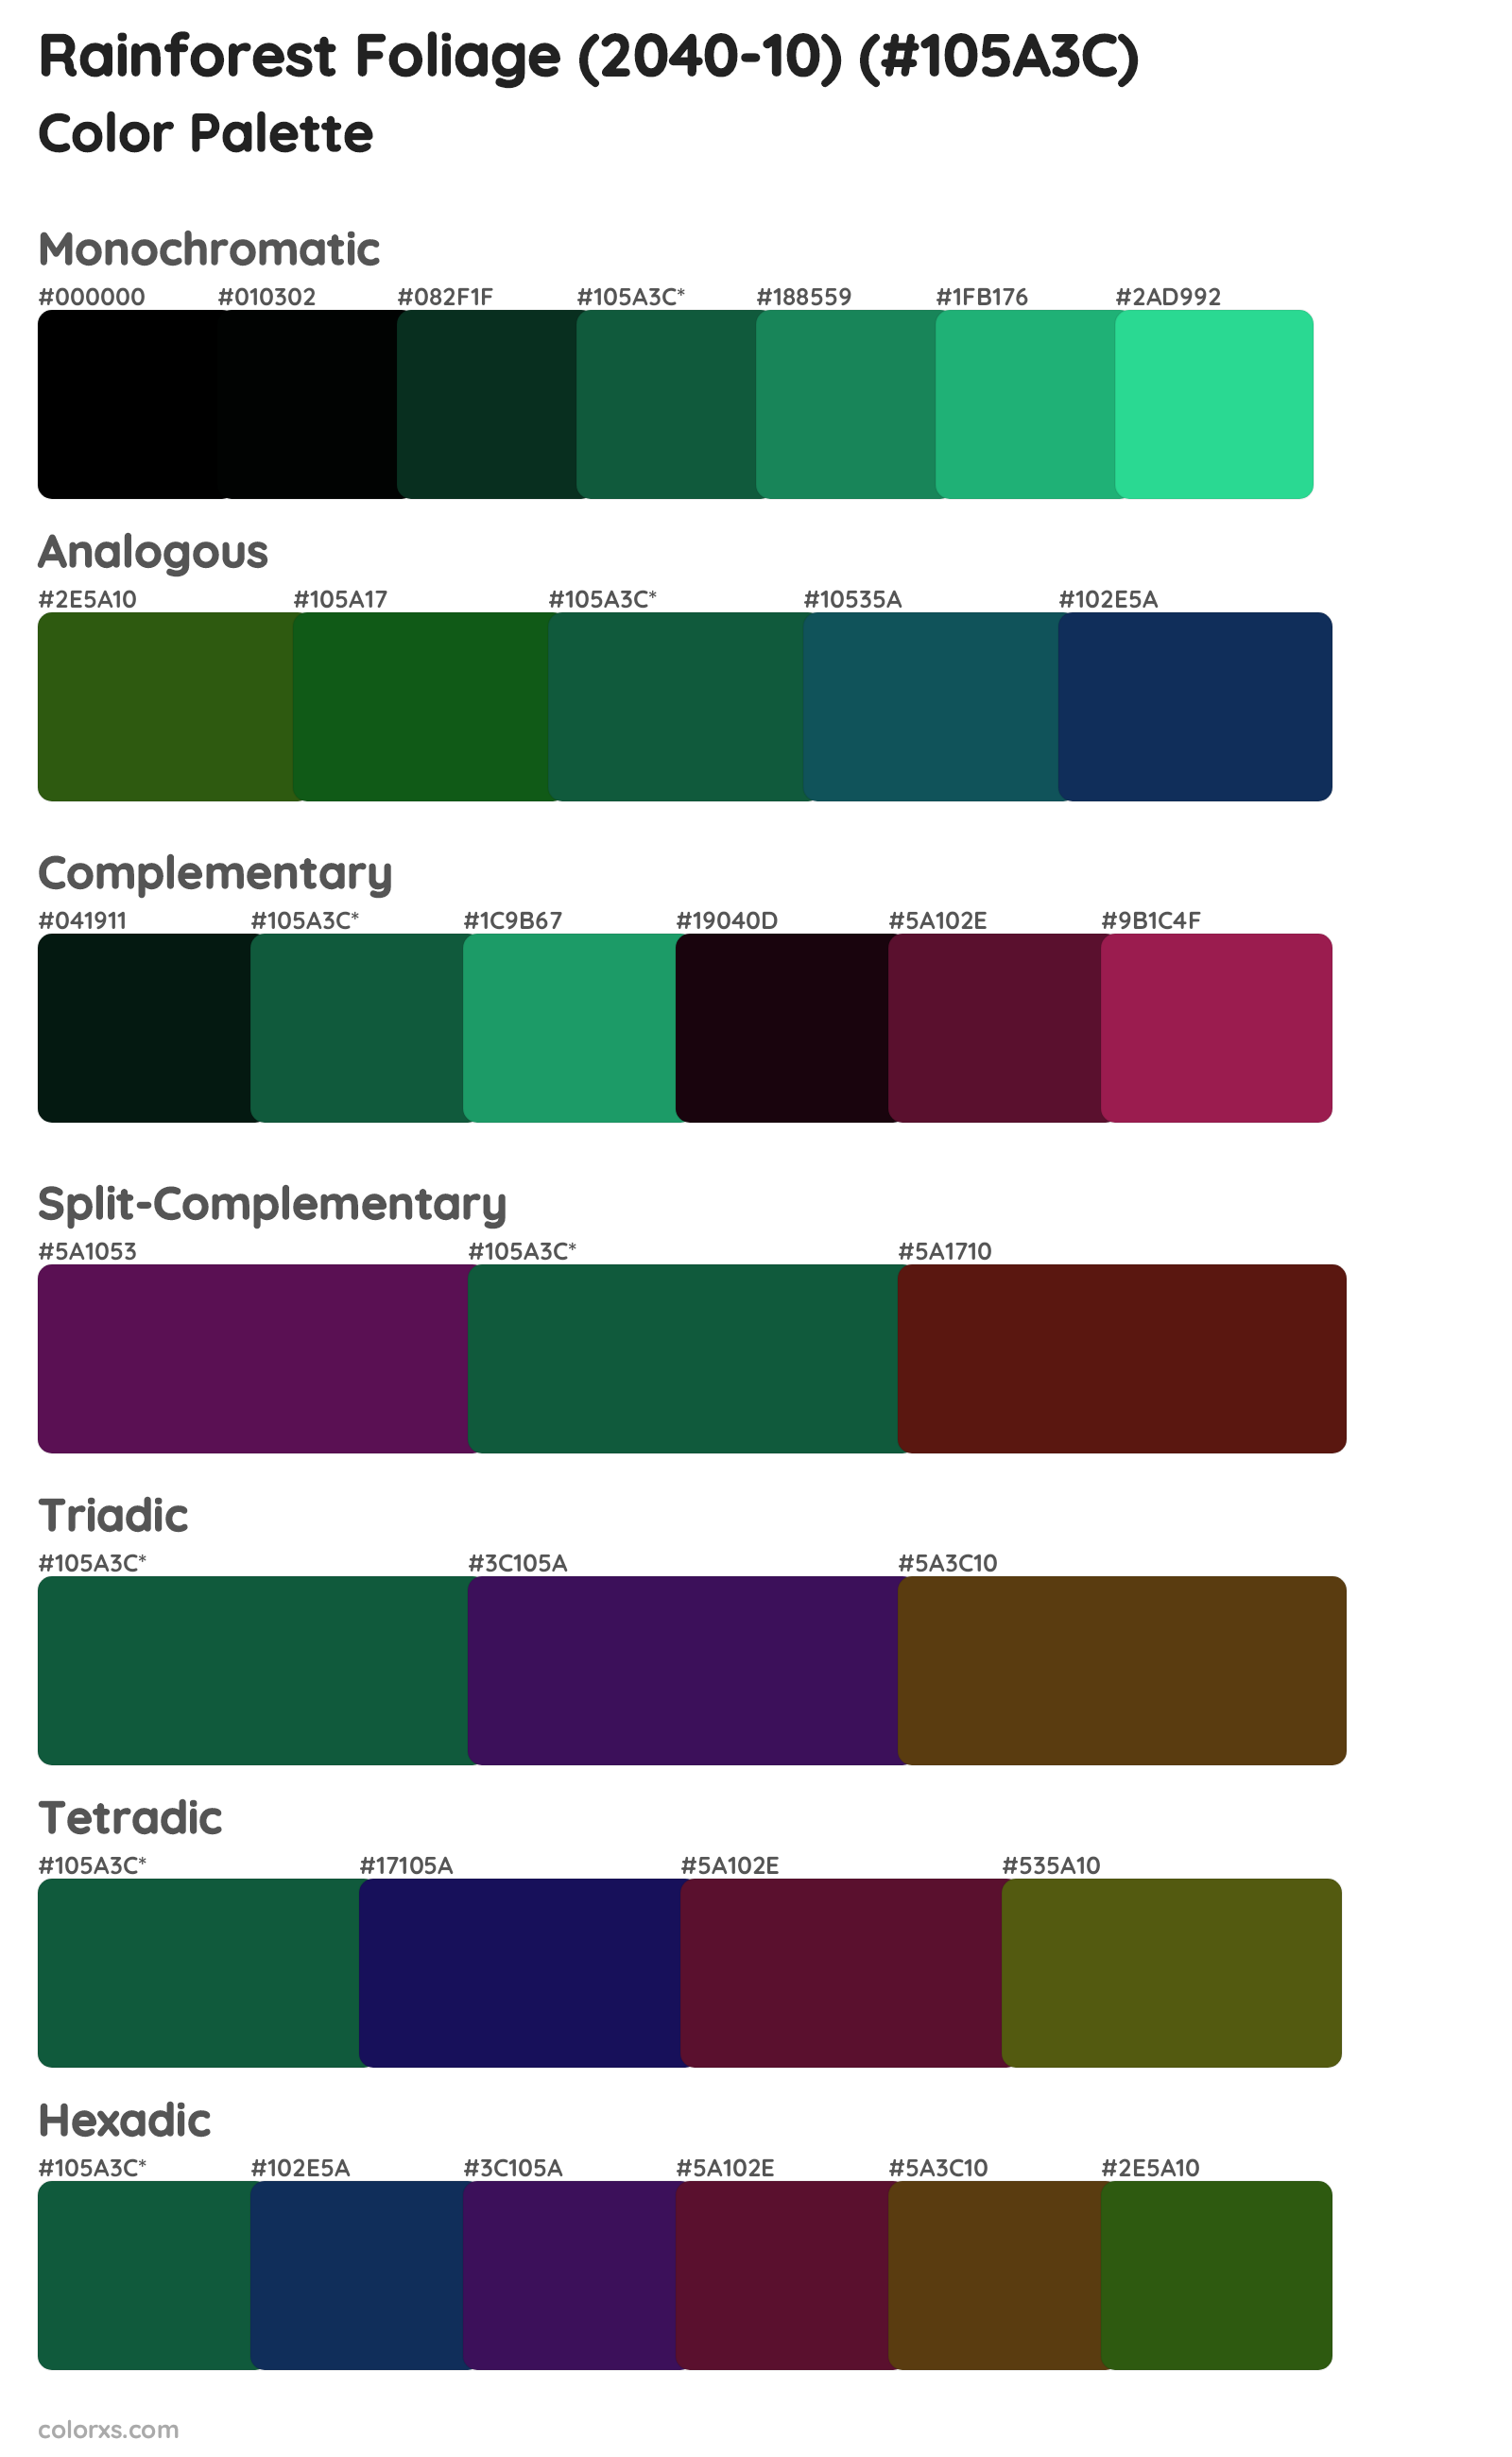 Rainforest Foliage (2040-10) Color Scheme Palettes